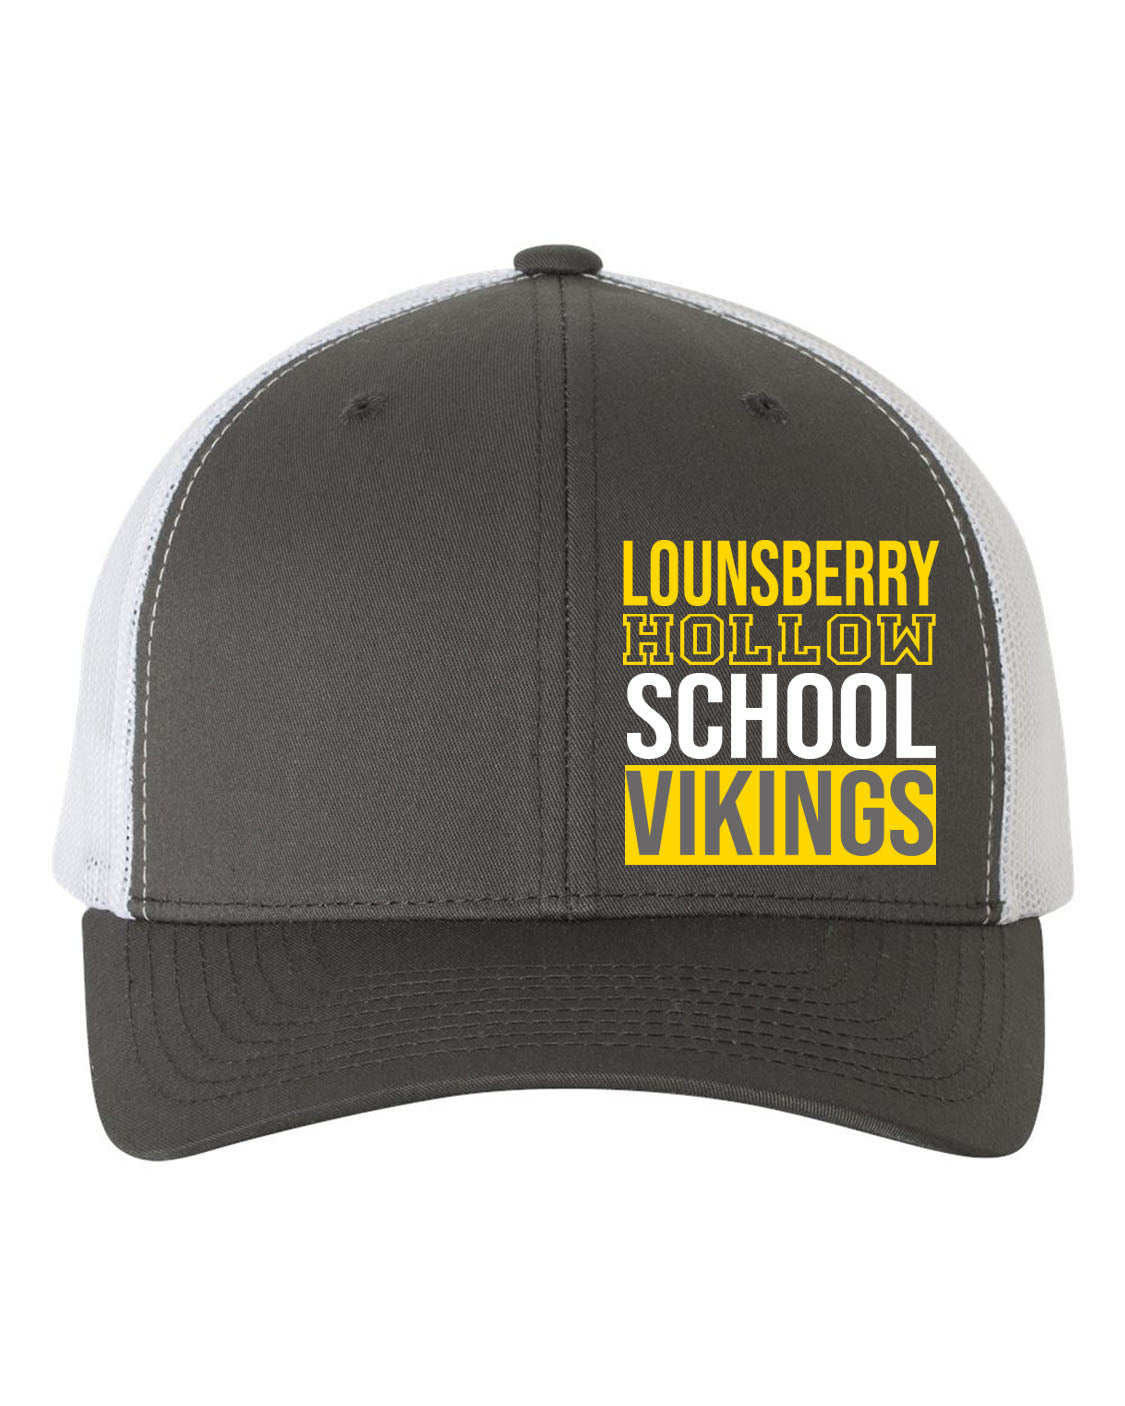 Lounsberry Hollow Design 1 Trucker Hat